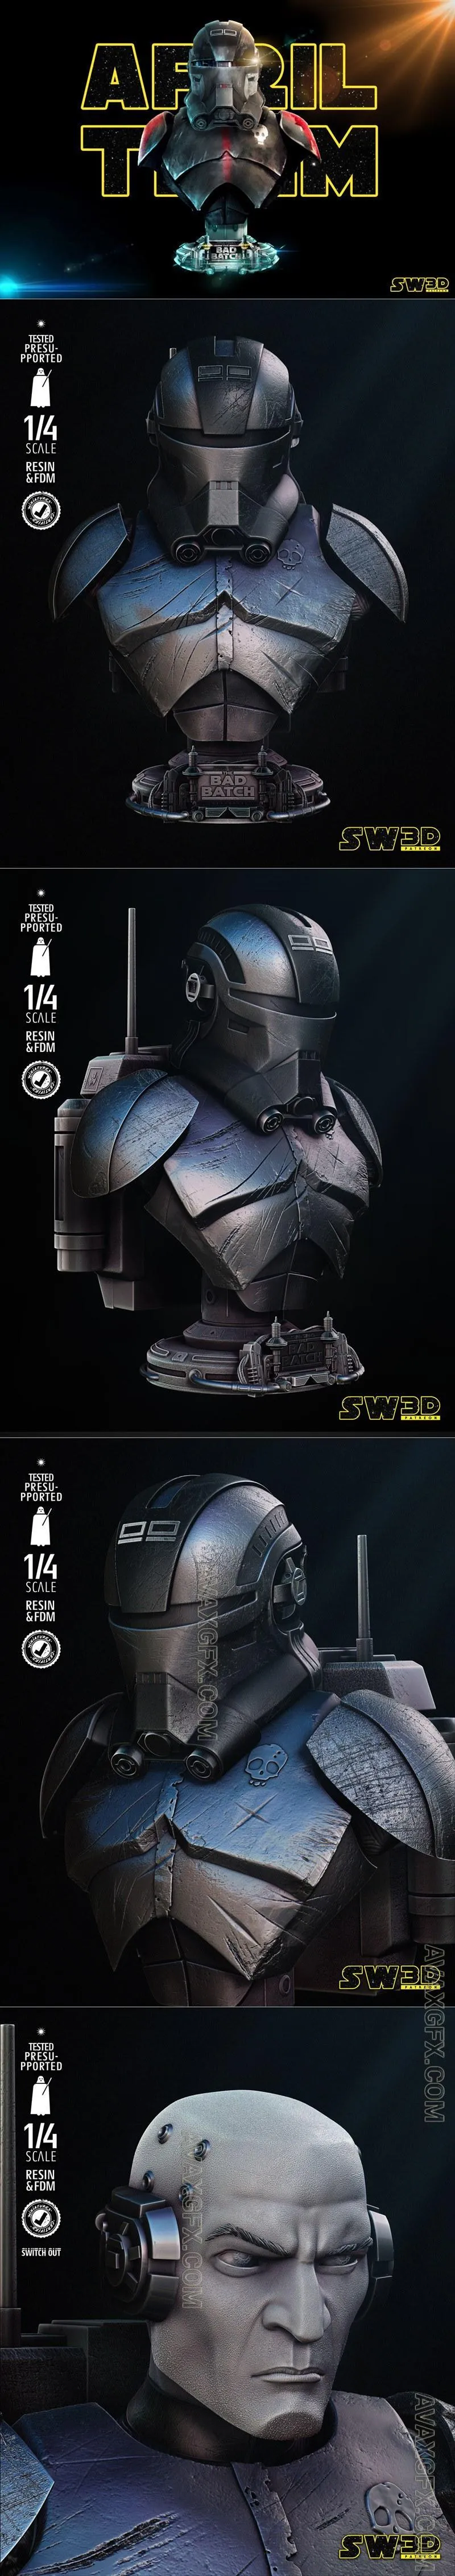 Star Wars - Echo Bust Portrait - STL 3D Model